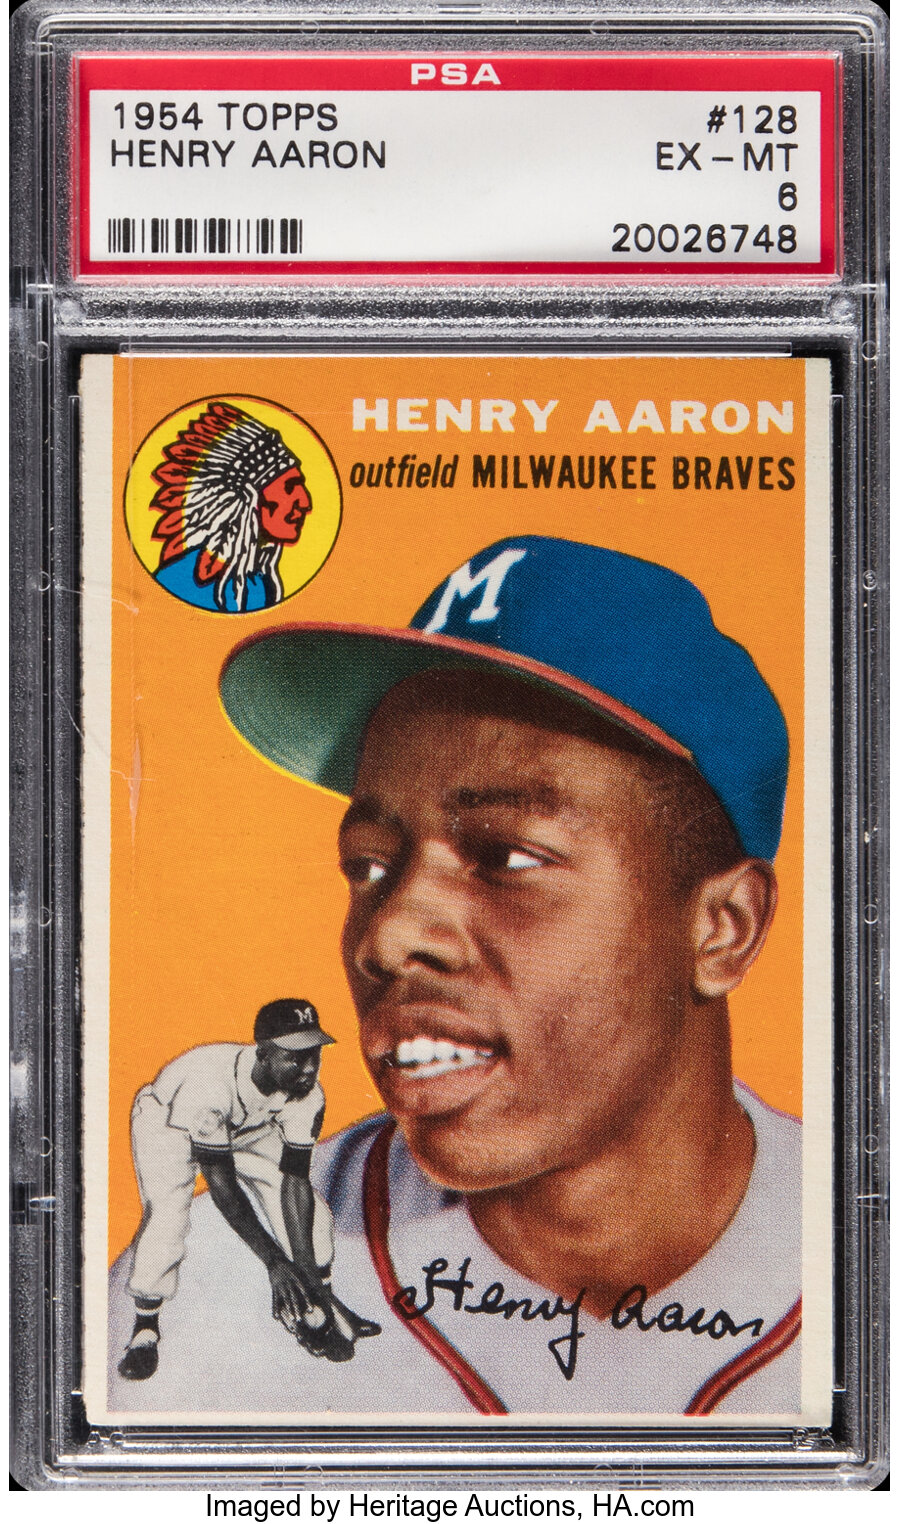 1954 Topps Henry Aaron Rookie #128 PSA EX-MT 6